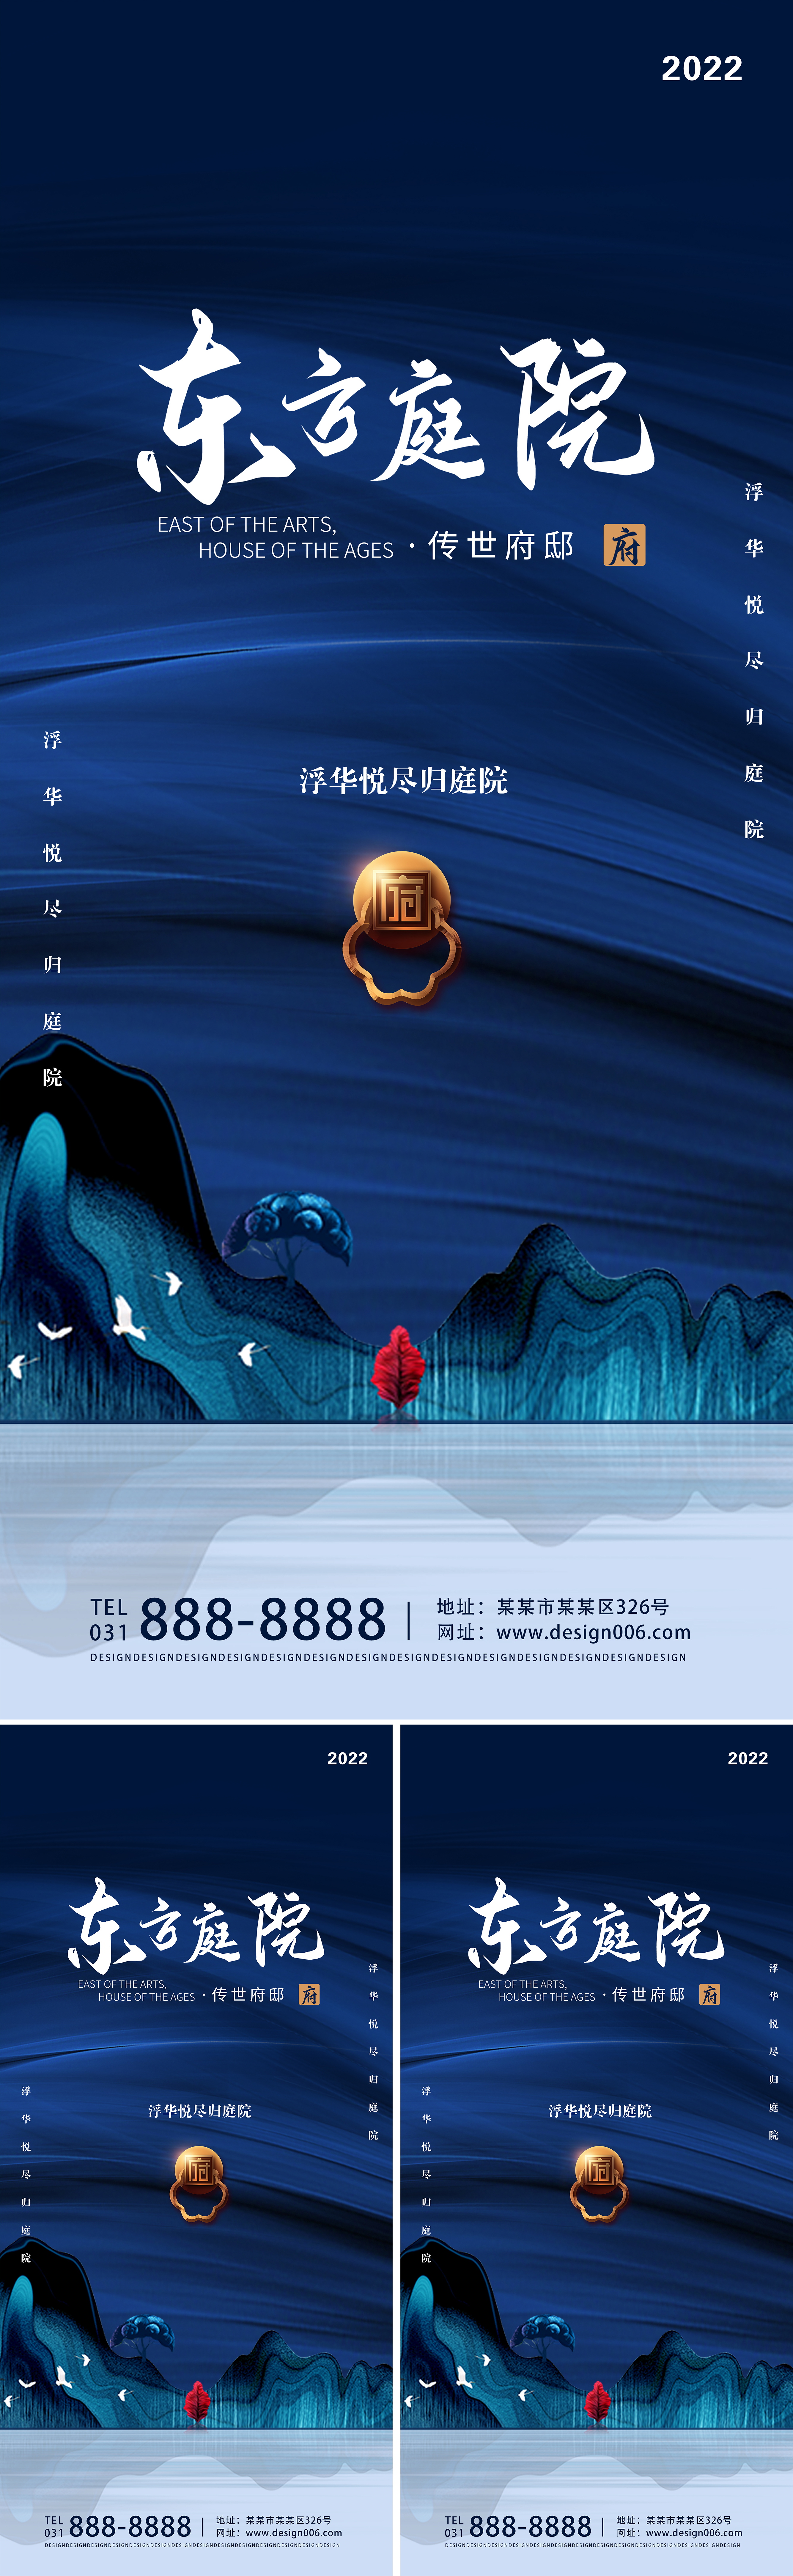 创意中国风房地产宣传海报psd广告设计素材海报模板免费下载